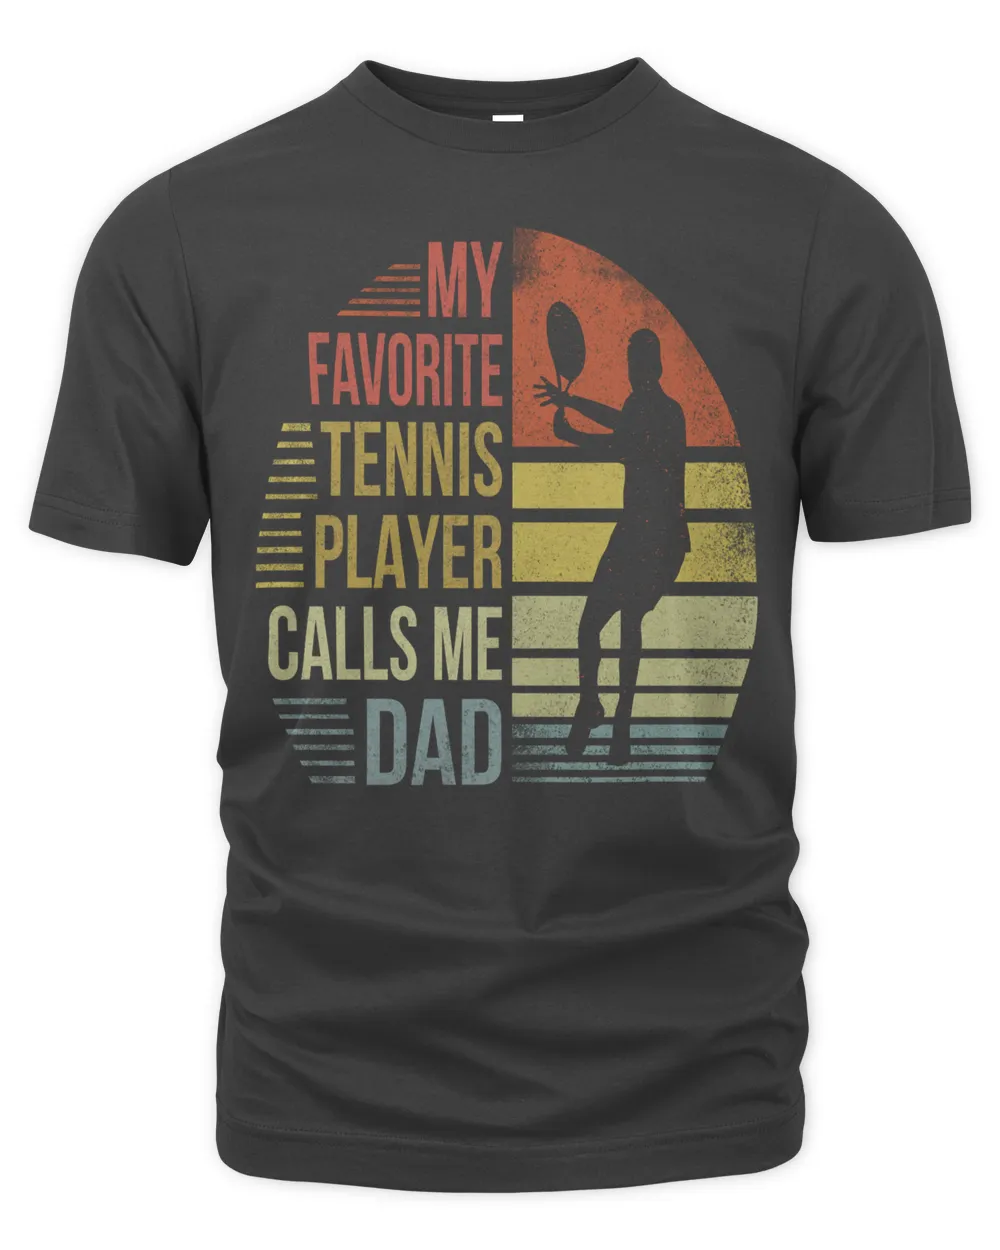 My favorite tennis player calls me dad